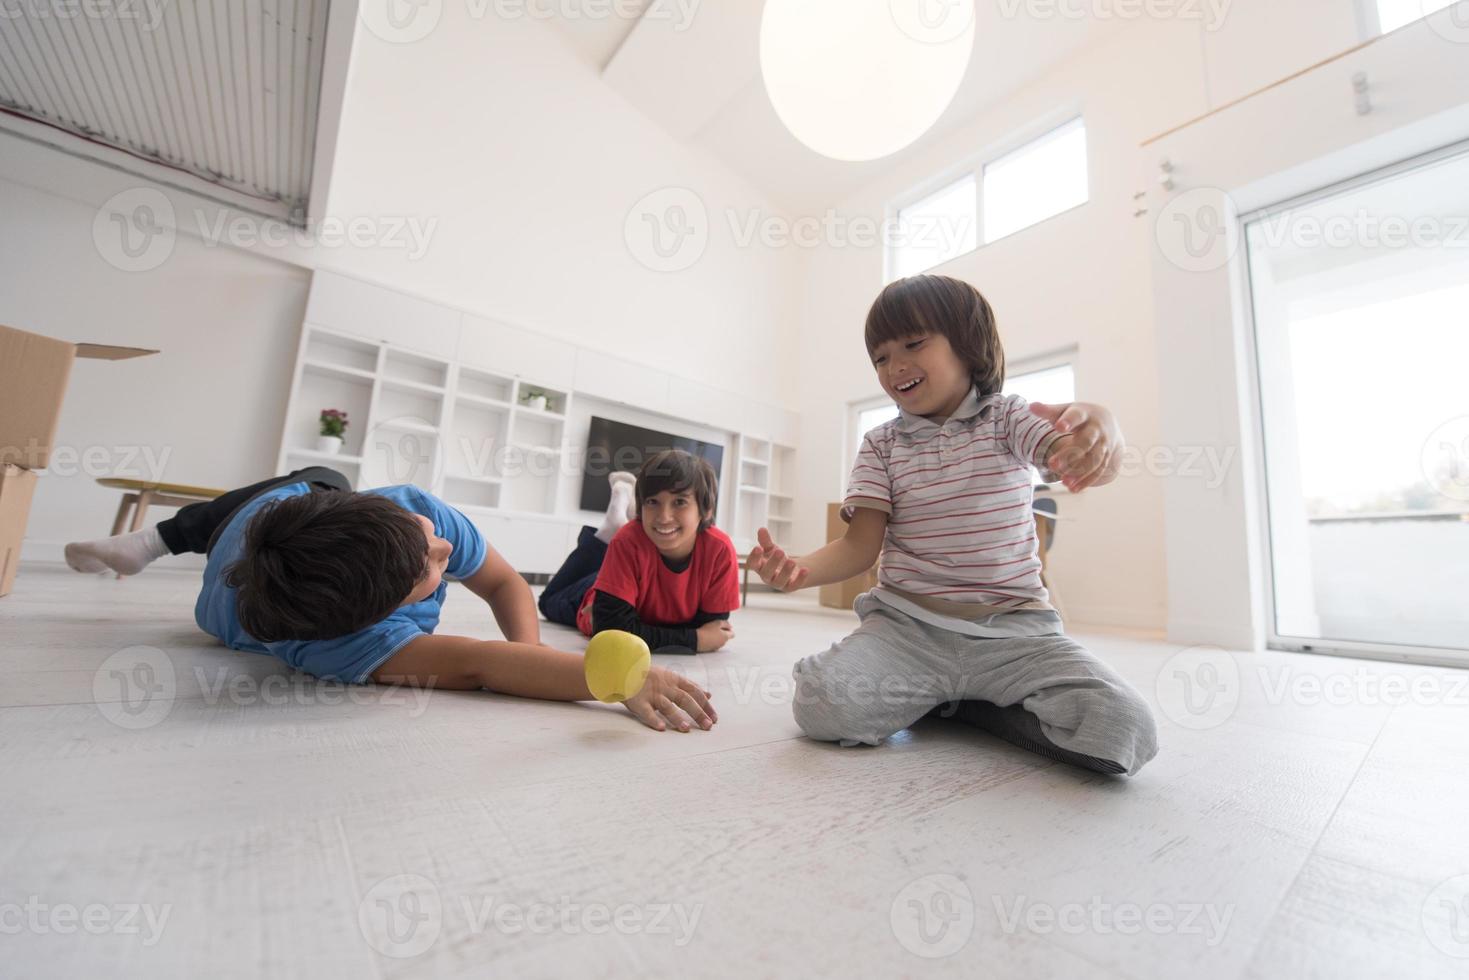 jongens die plezier hebben met een appel op de vloer foto